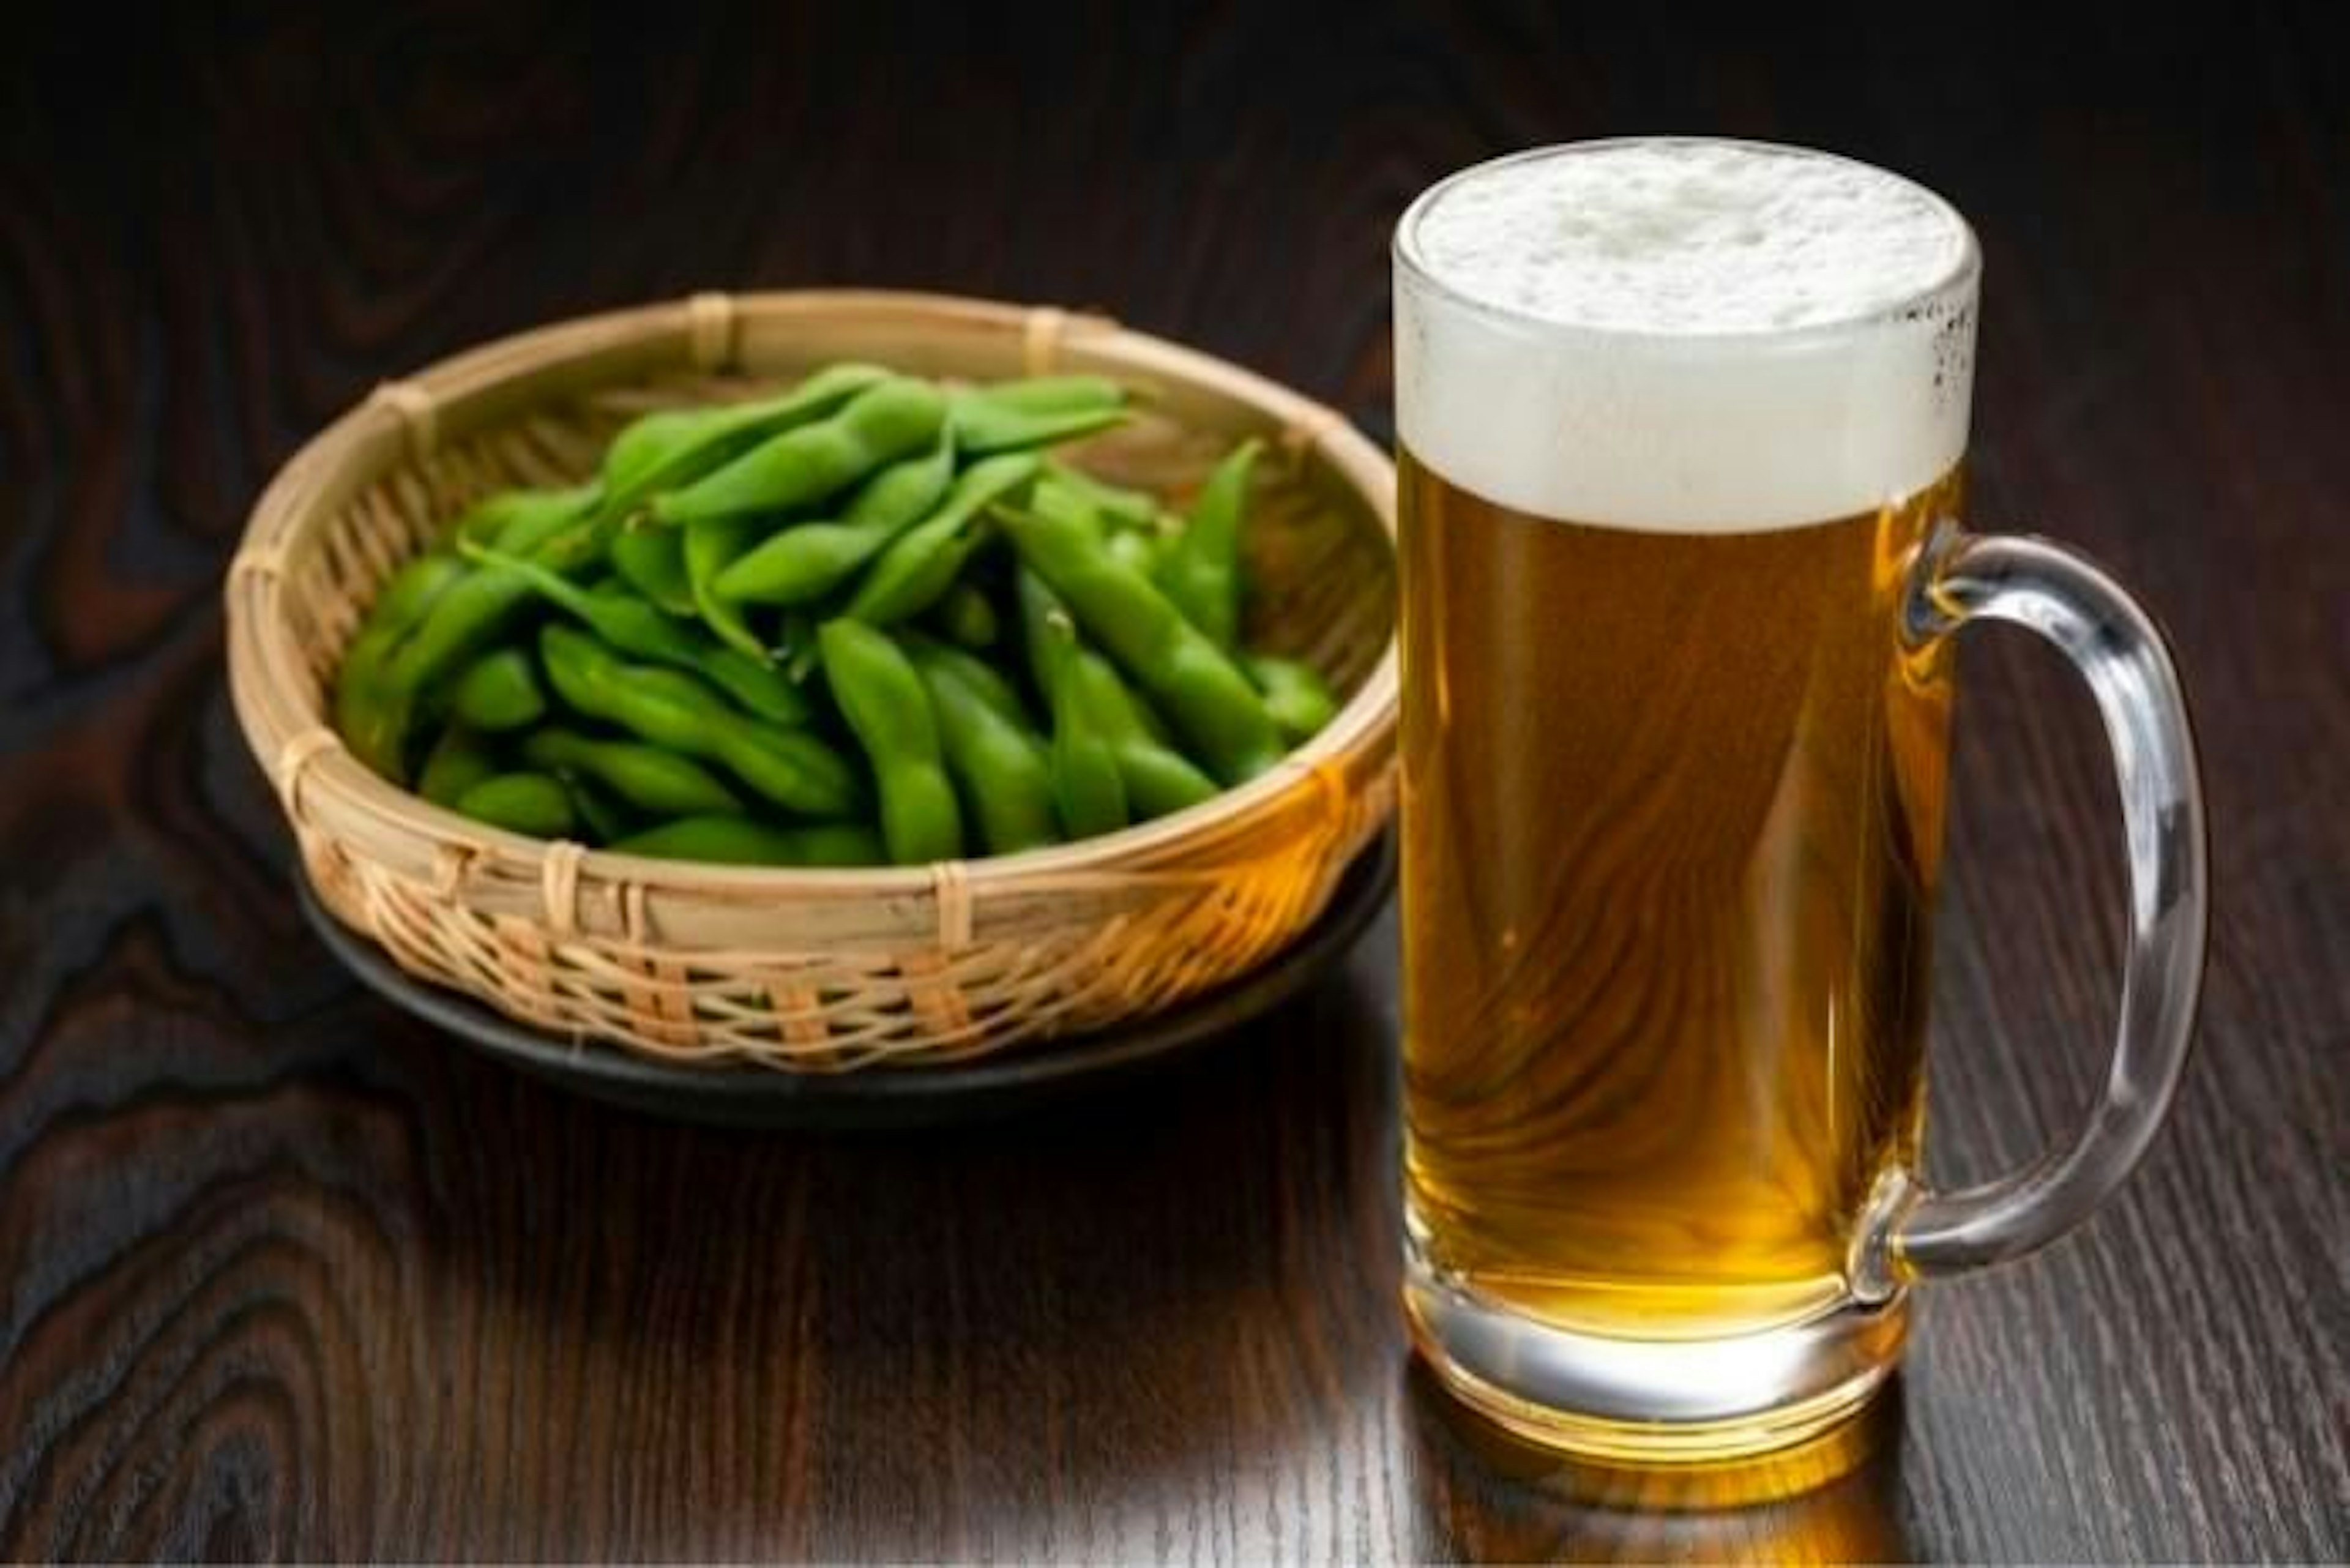 Kirin alkoholfreies Bier